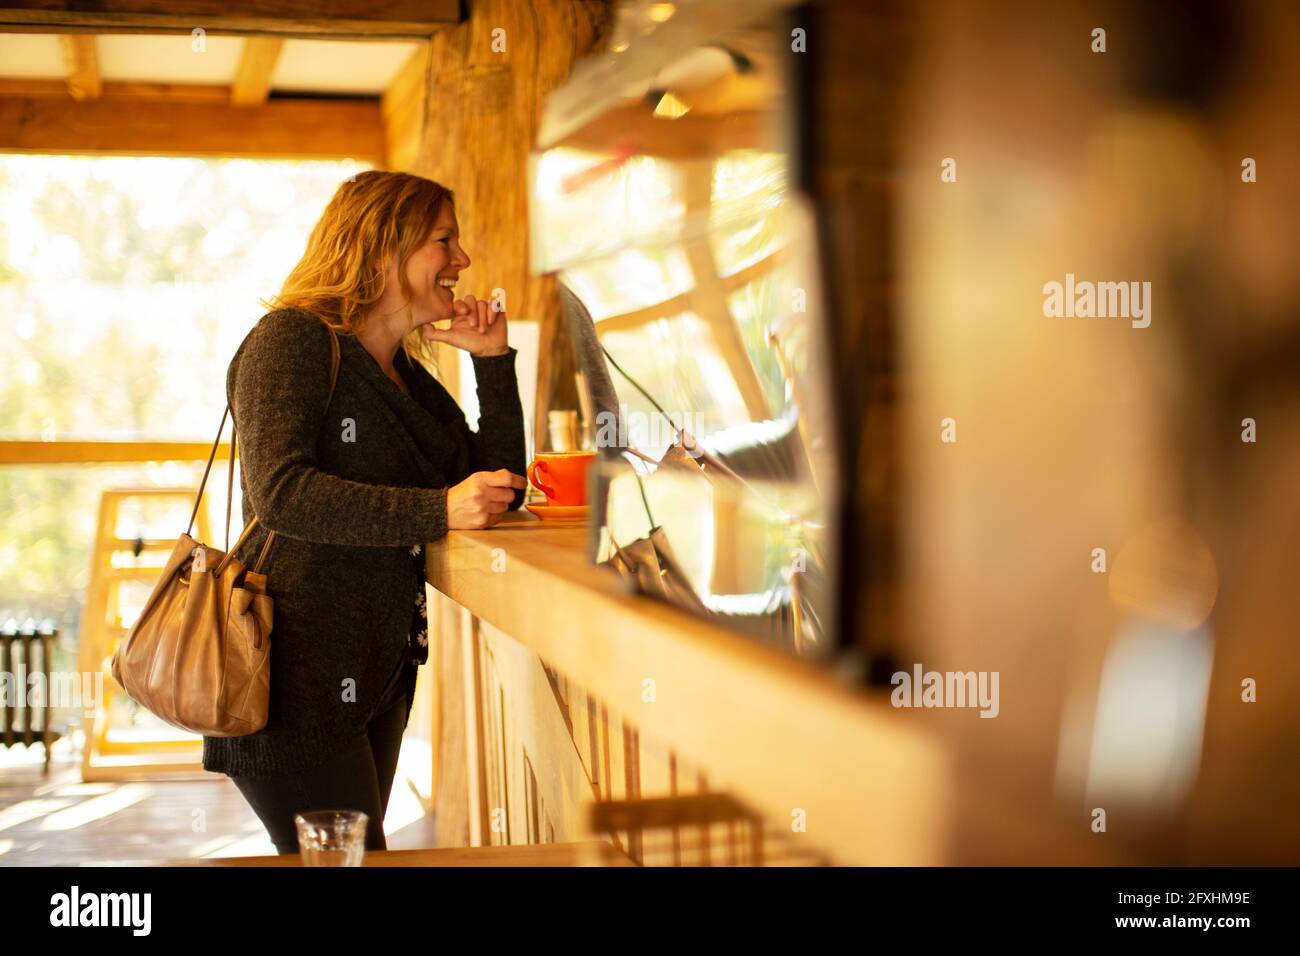 Glückliche weibliche Kundin, die Kaffee am Cafe-Schalter bestellte Stockfoto